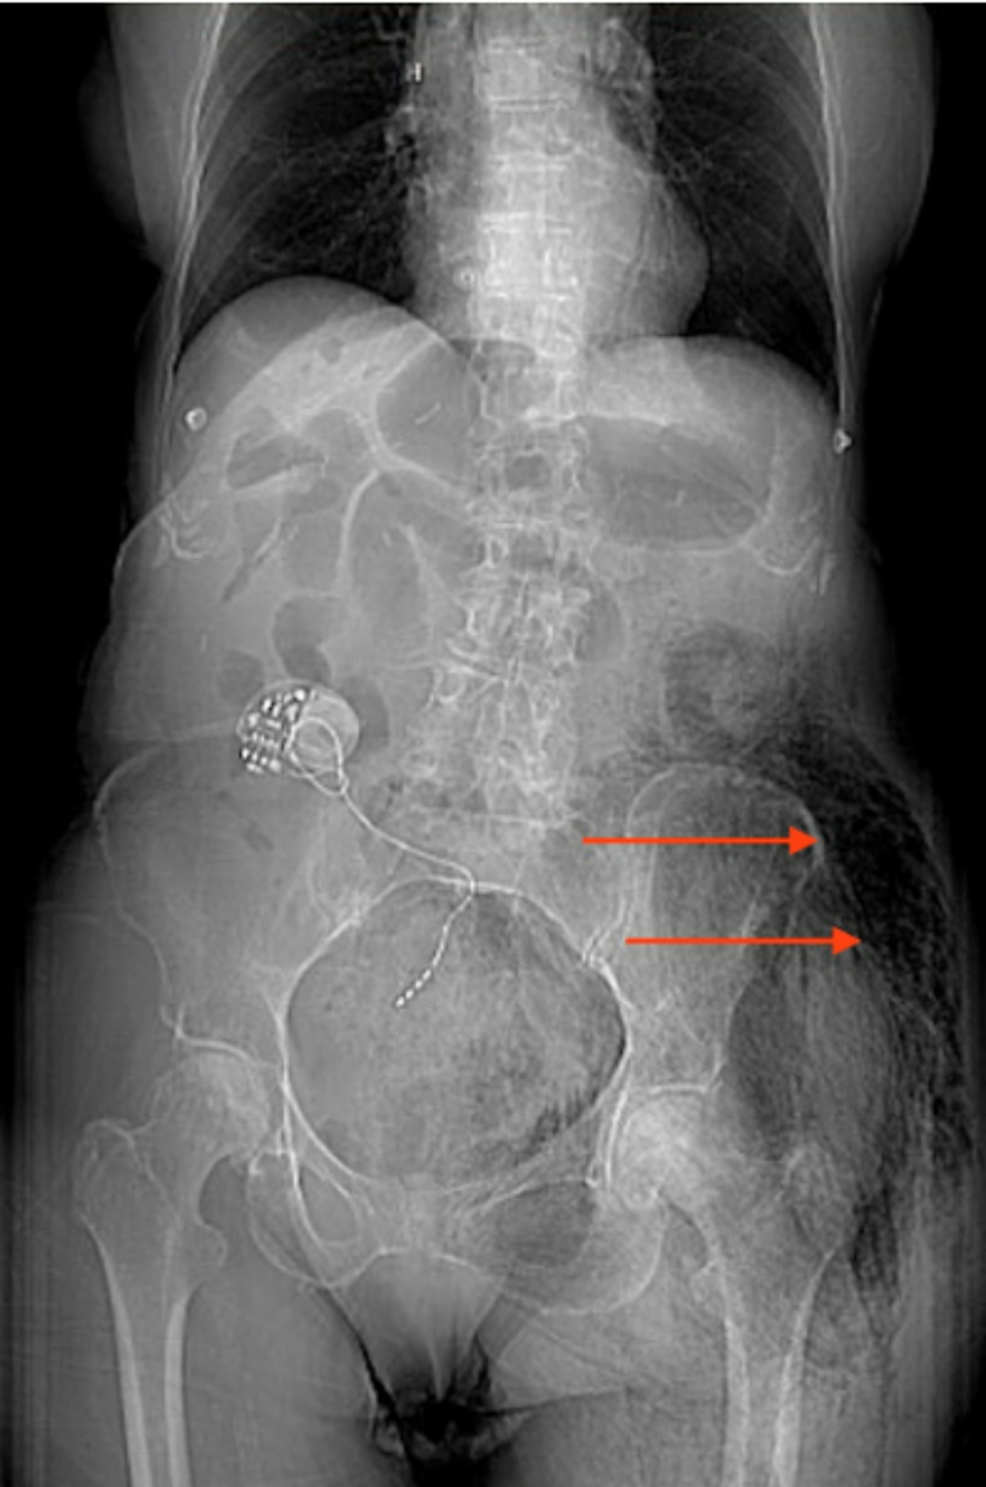 Tomodensitométrie-(CT)-abdomen-et-bassin-avec-contraste-antéropostérieur-vue-montrant-de-l’air-libre-dans-les-régions-fessières-et-hanches-gauche-(flèches rouges)